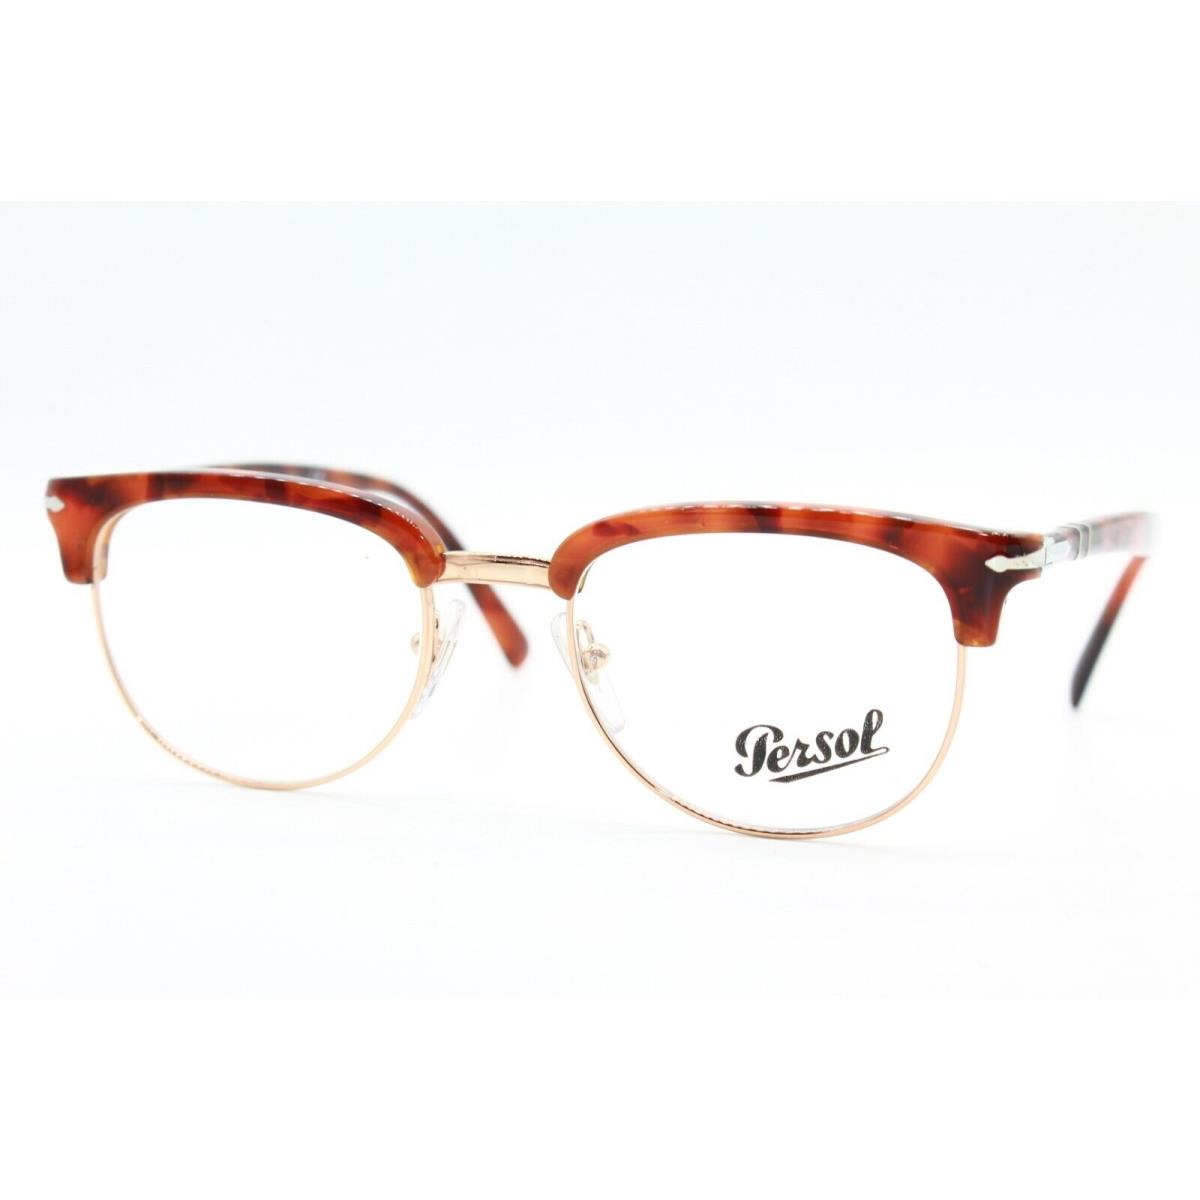 Persol eyeglasses  - BLONDE HAVANA-GOLD Frame